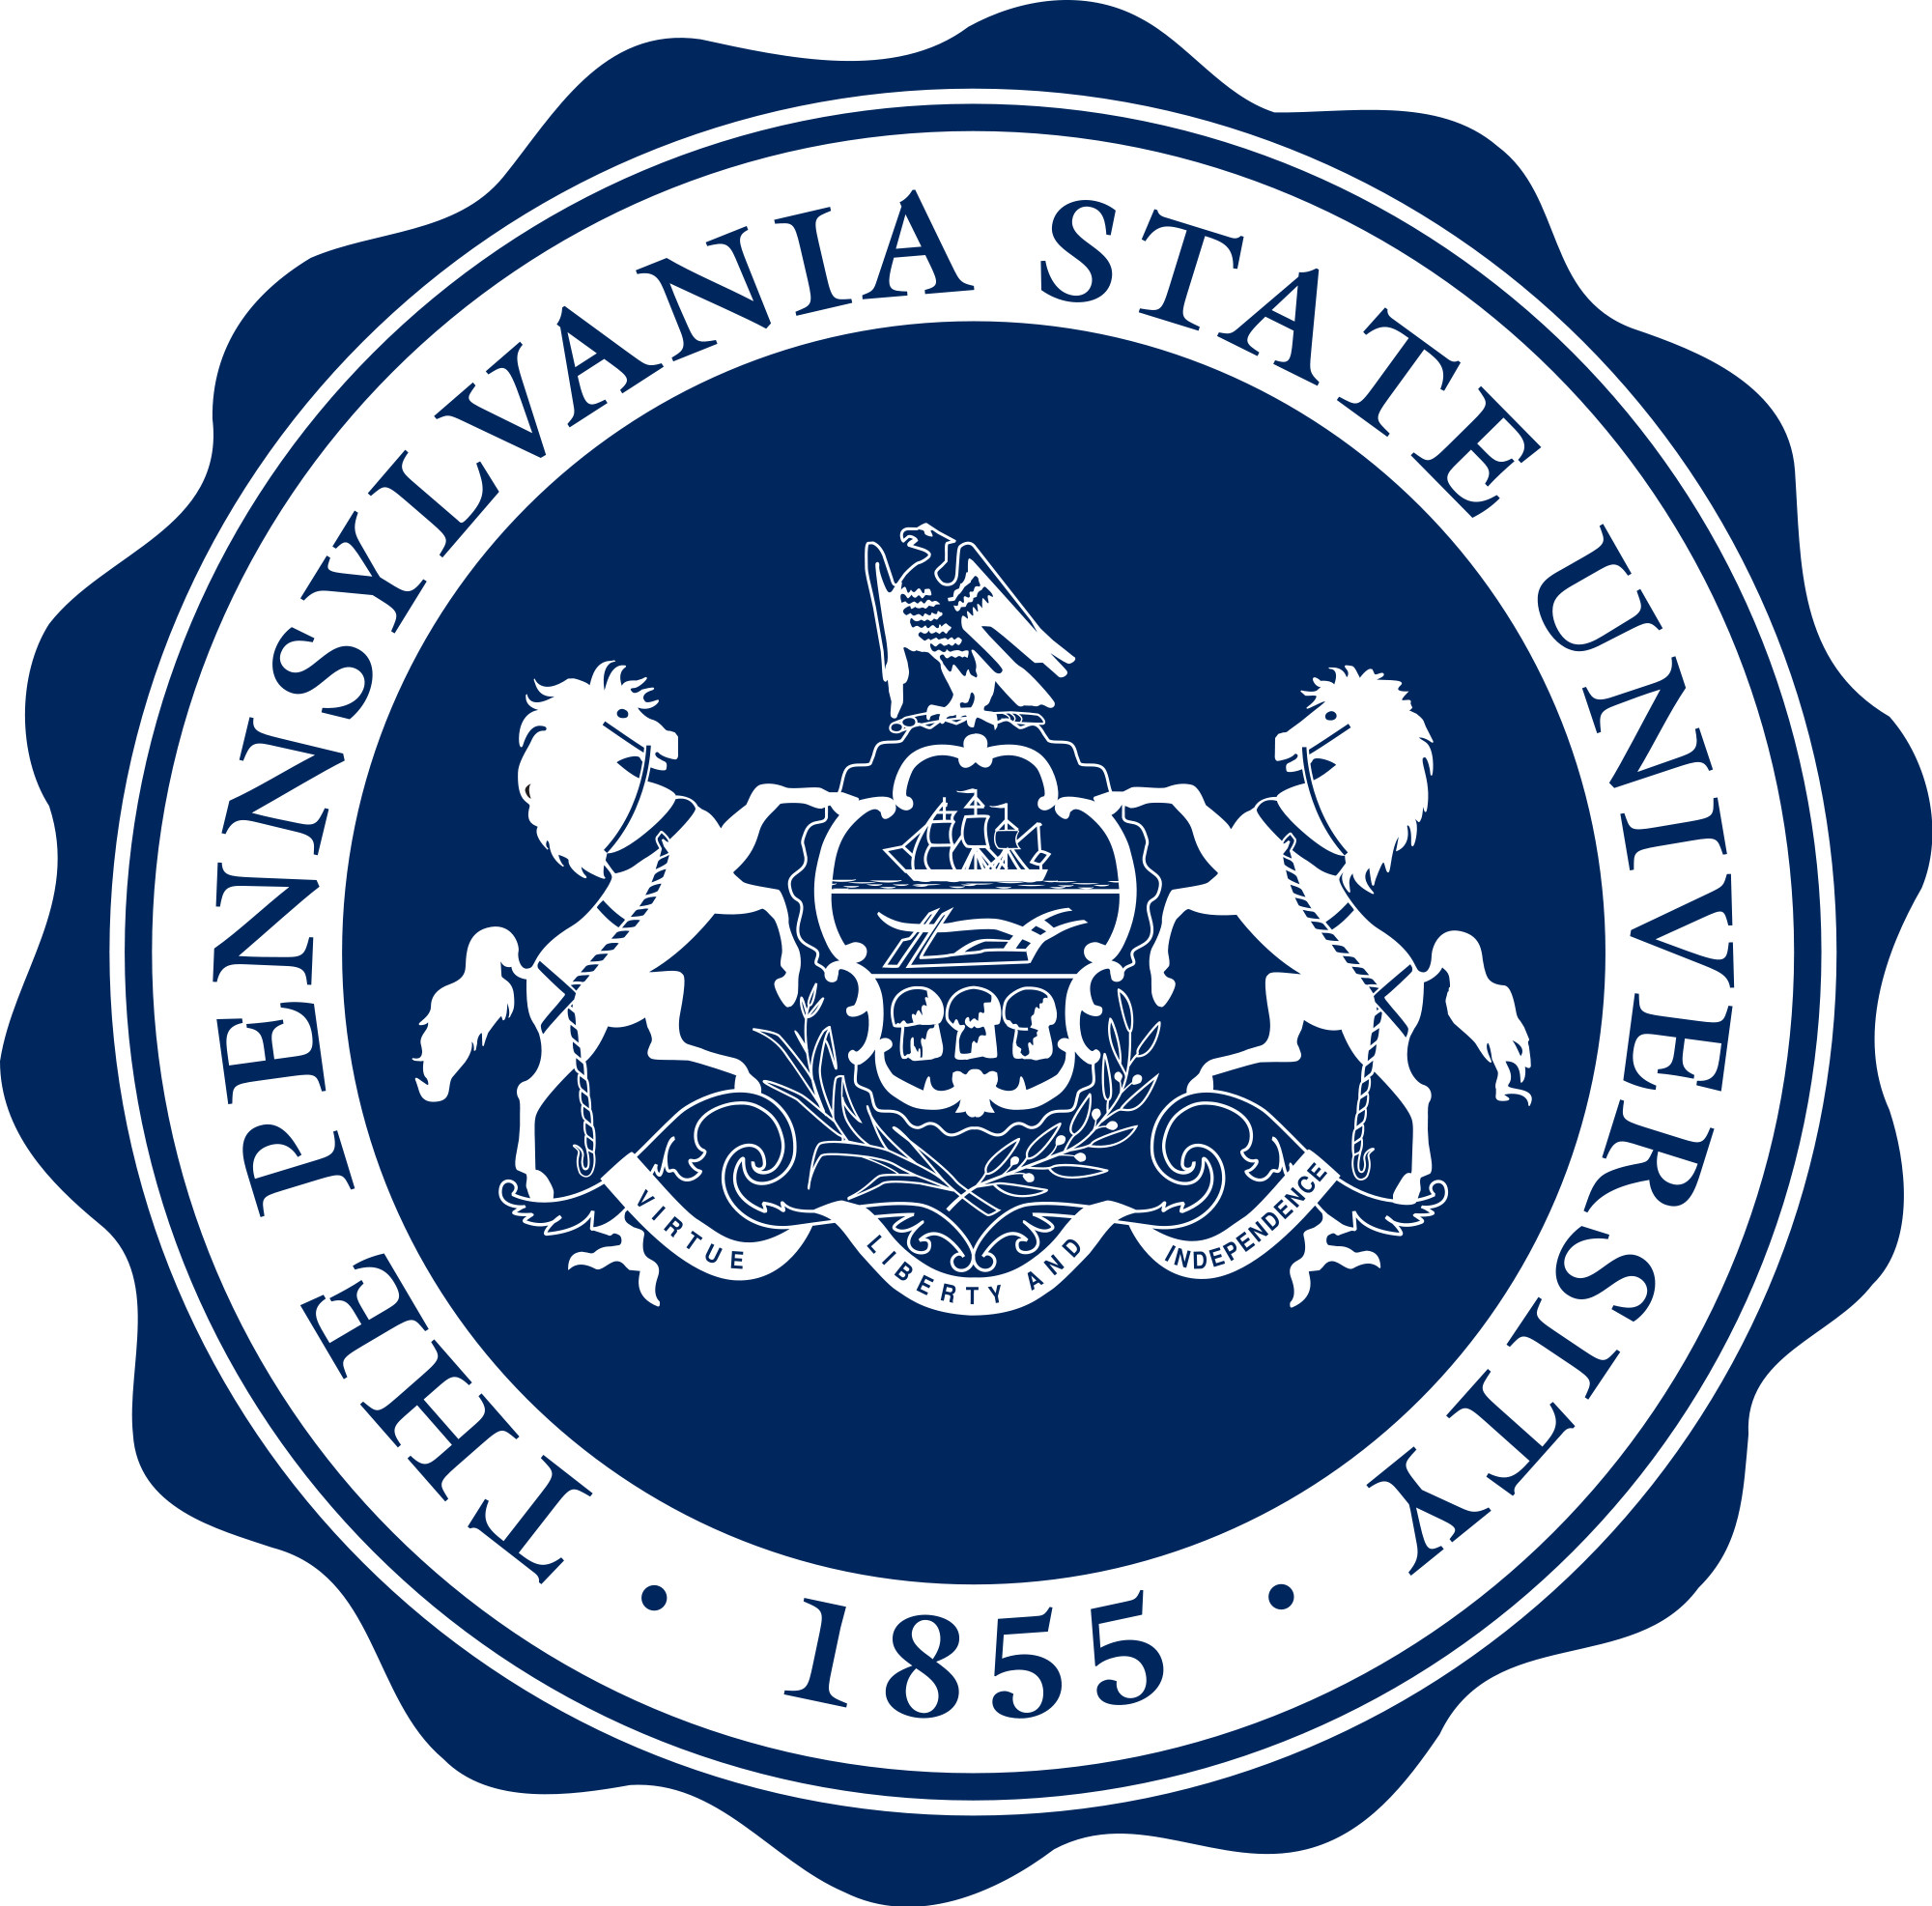 2000x1973 Penn State logo - Google Search